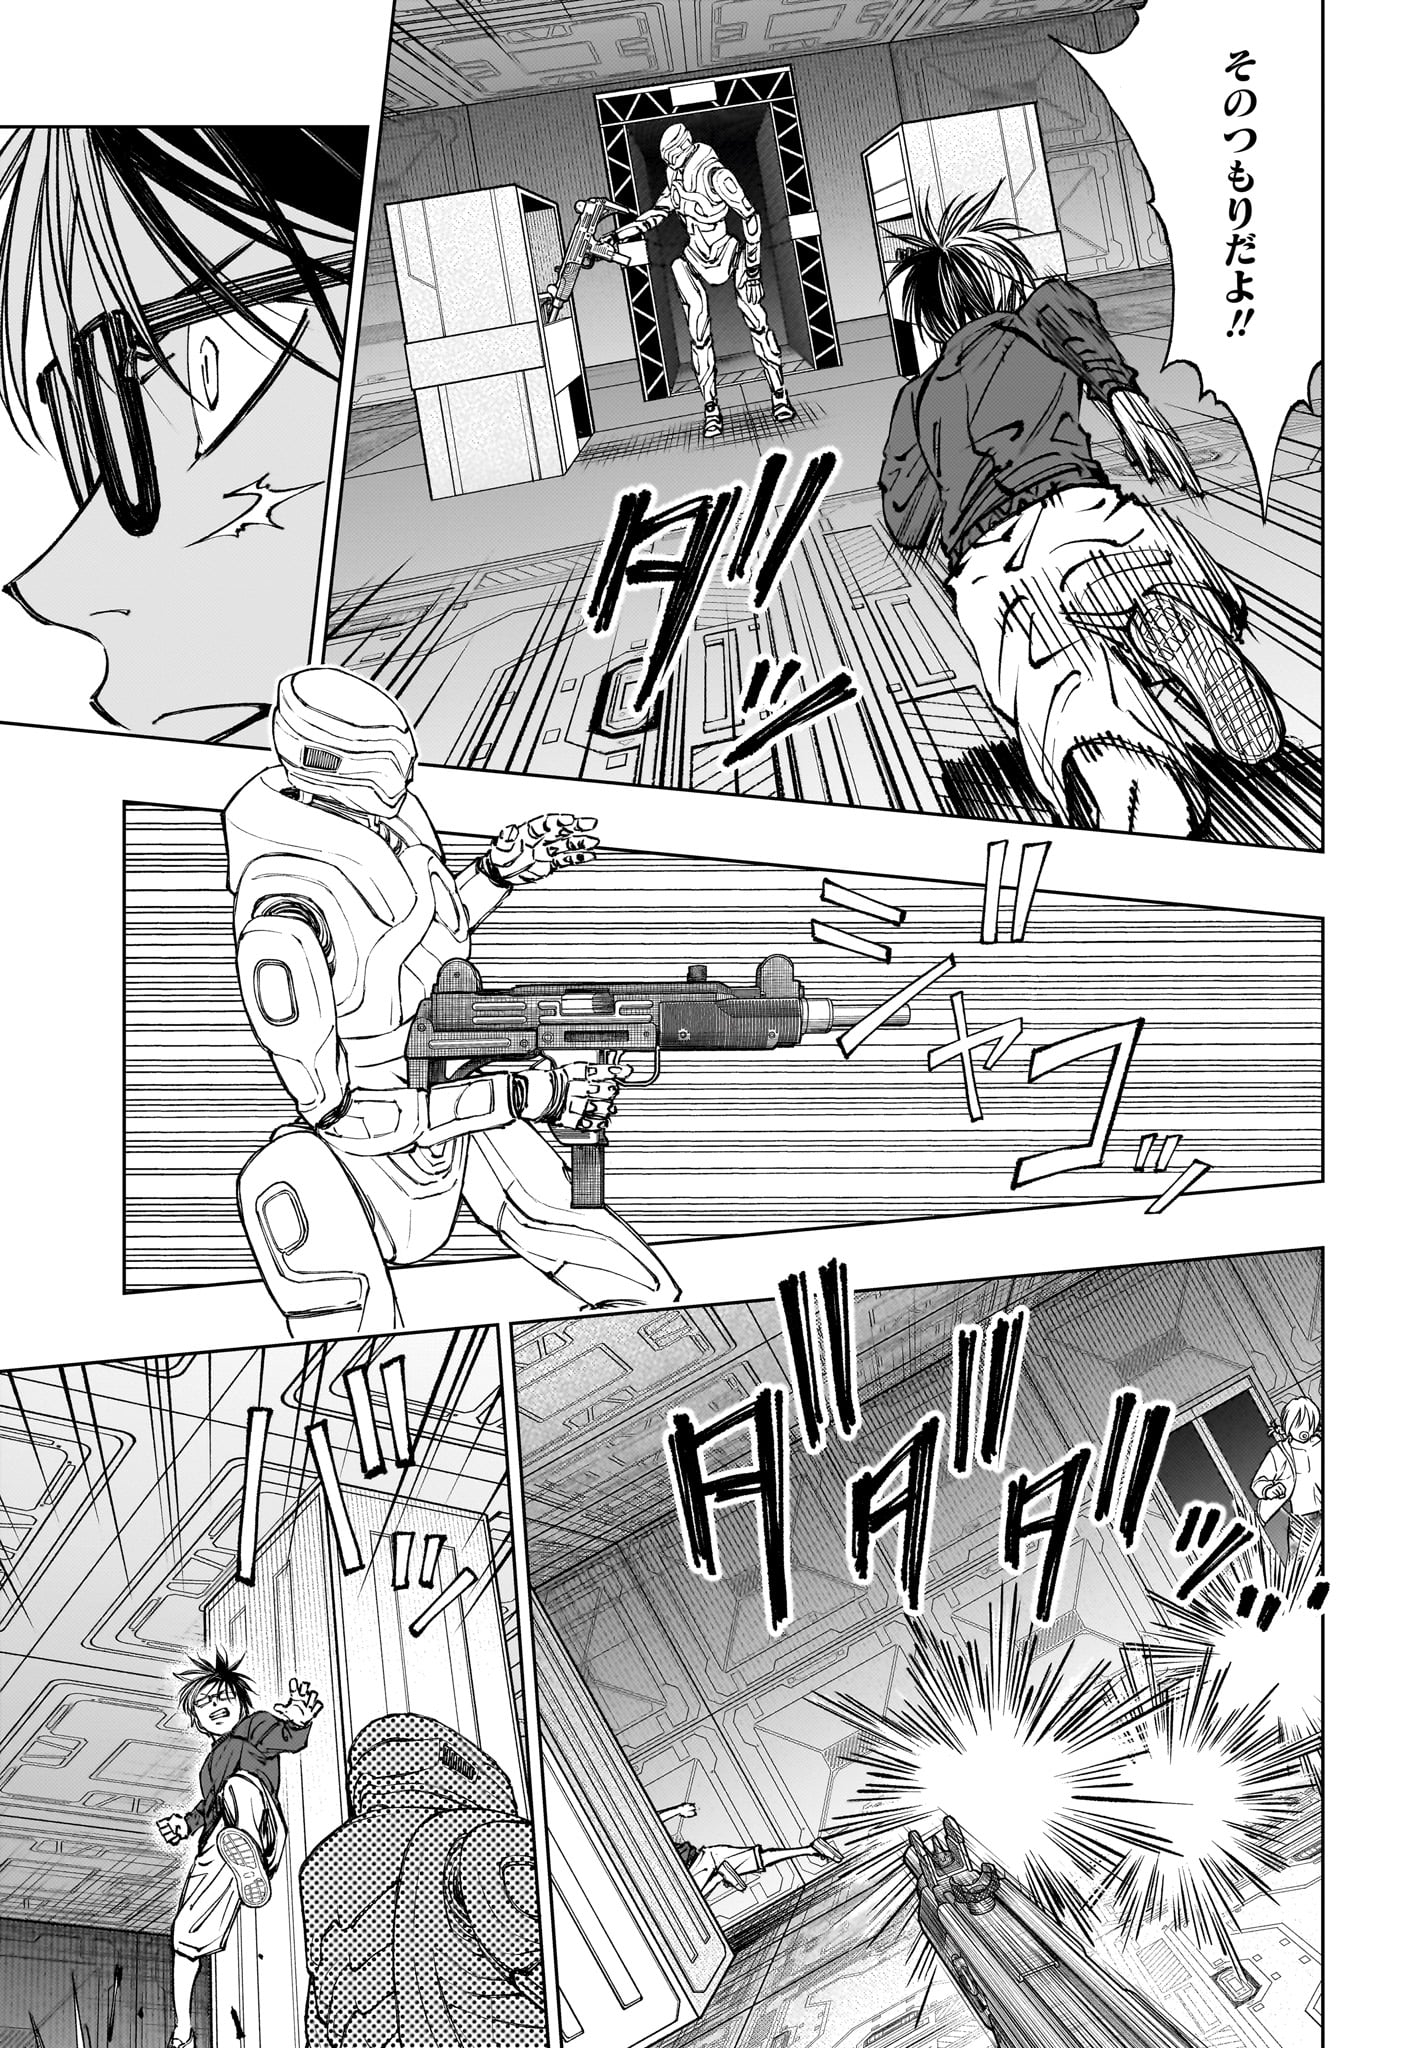 Kill Ao - Chapter 57 - Page 15